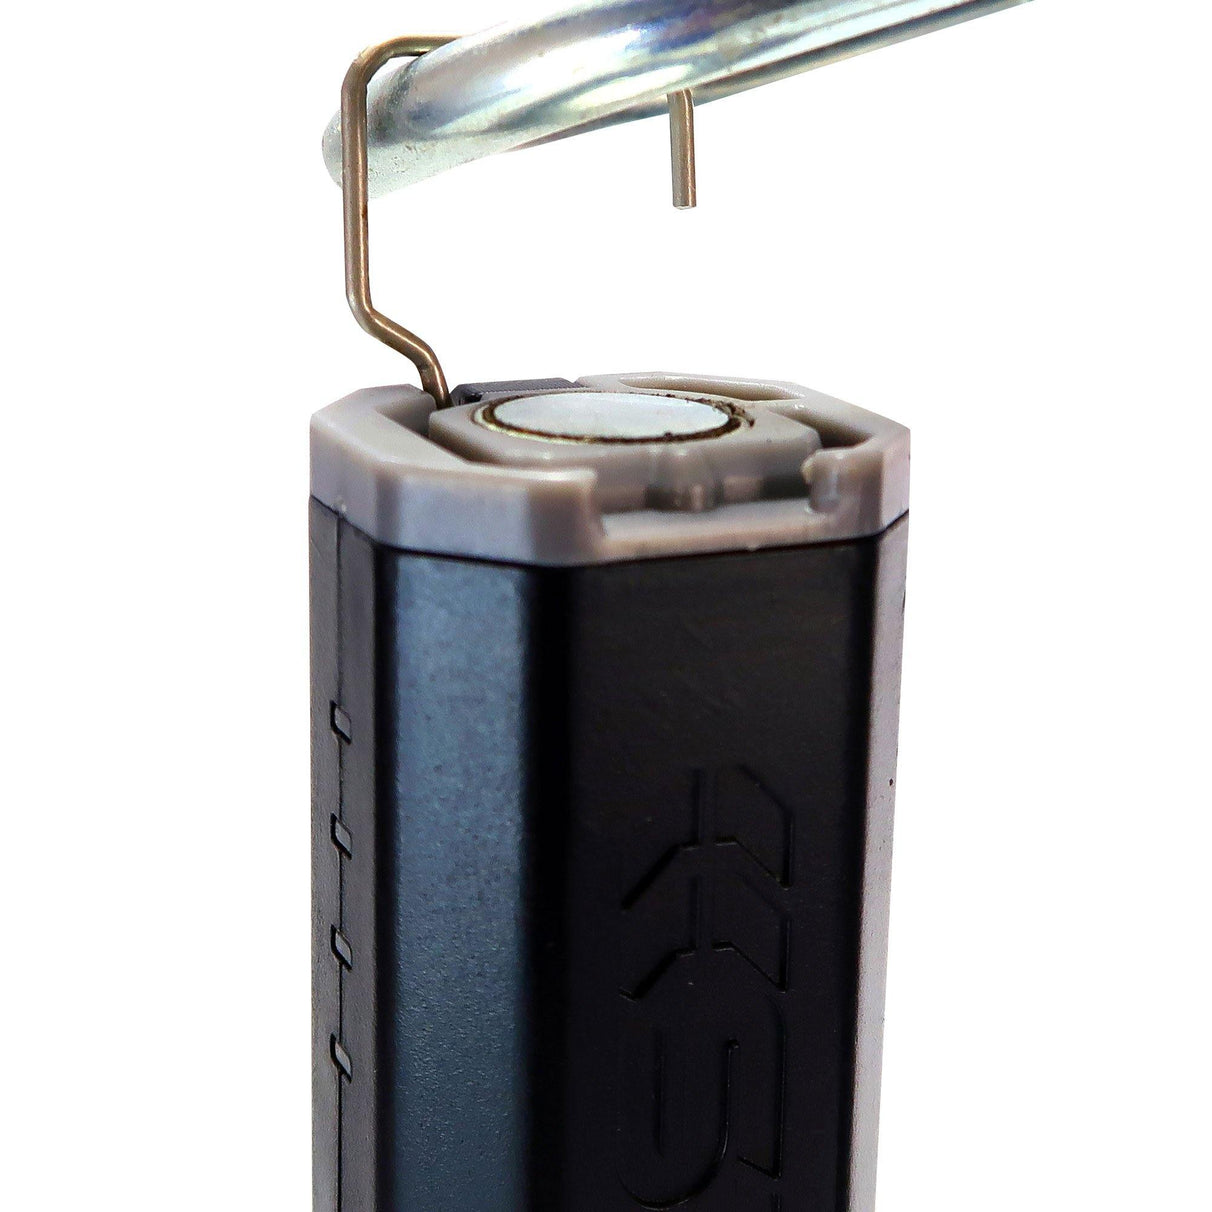 Hanging Hook - FLEXIT Pocket Light | STKR Concepts - striker